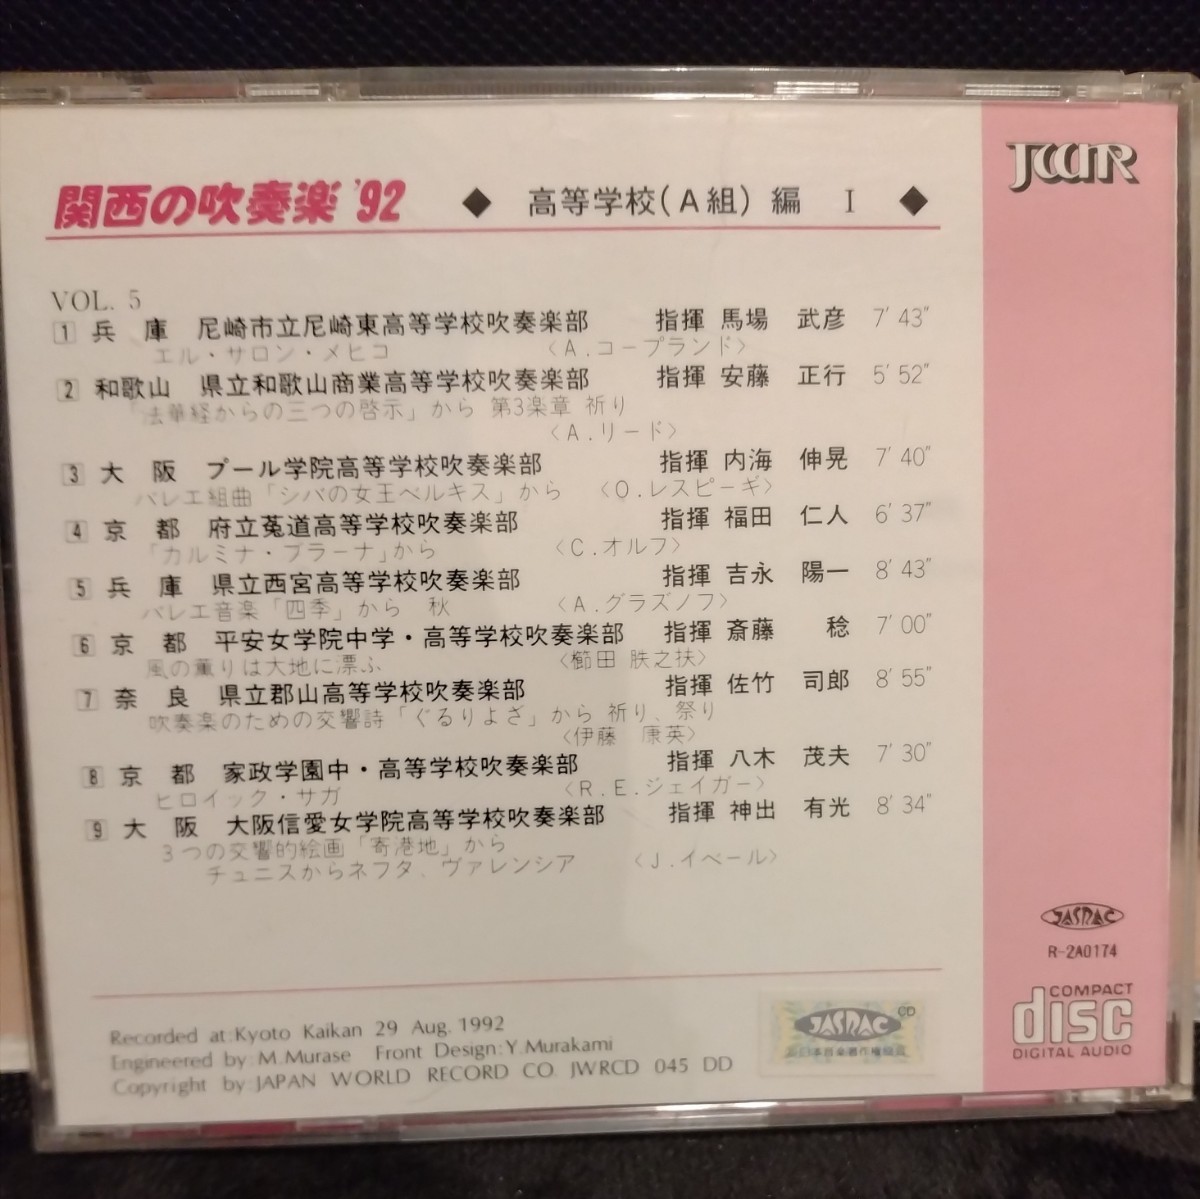 吹奏楽CD] 関西の吹奏楽 '92 (VOL.5) / 高等学校(A組)編 / 関西吹奏楽コンクール_画像2